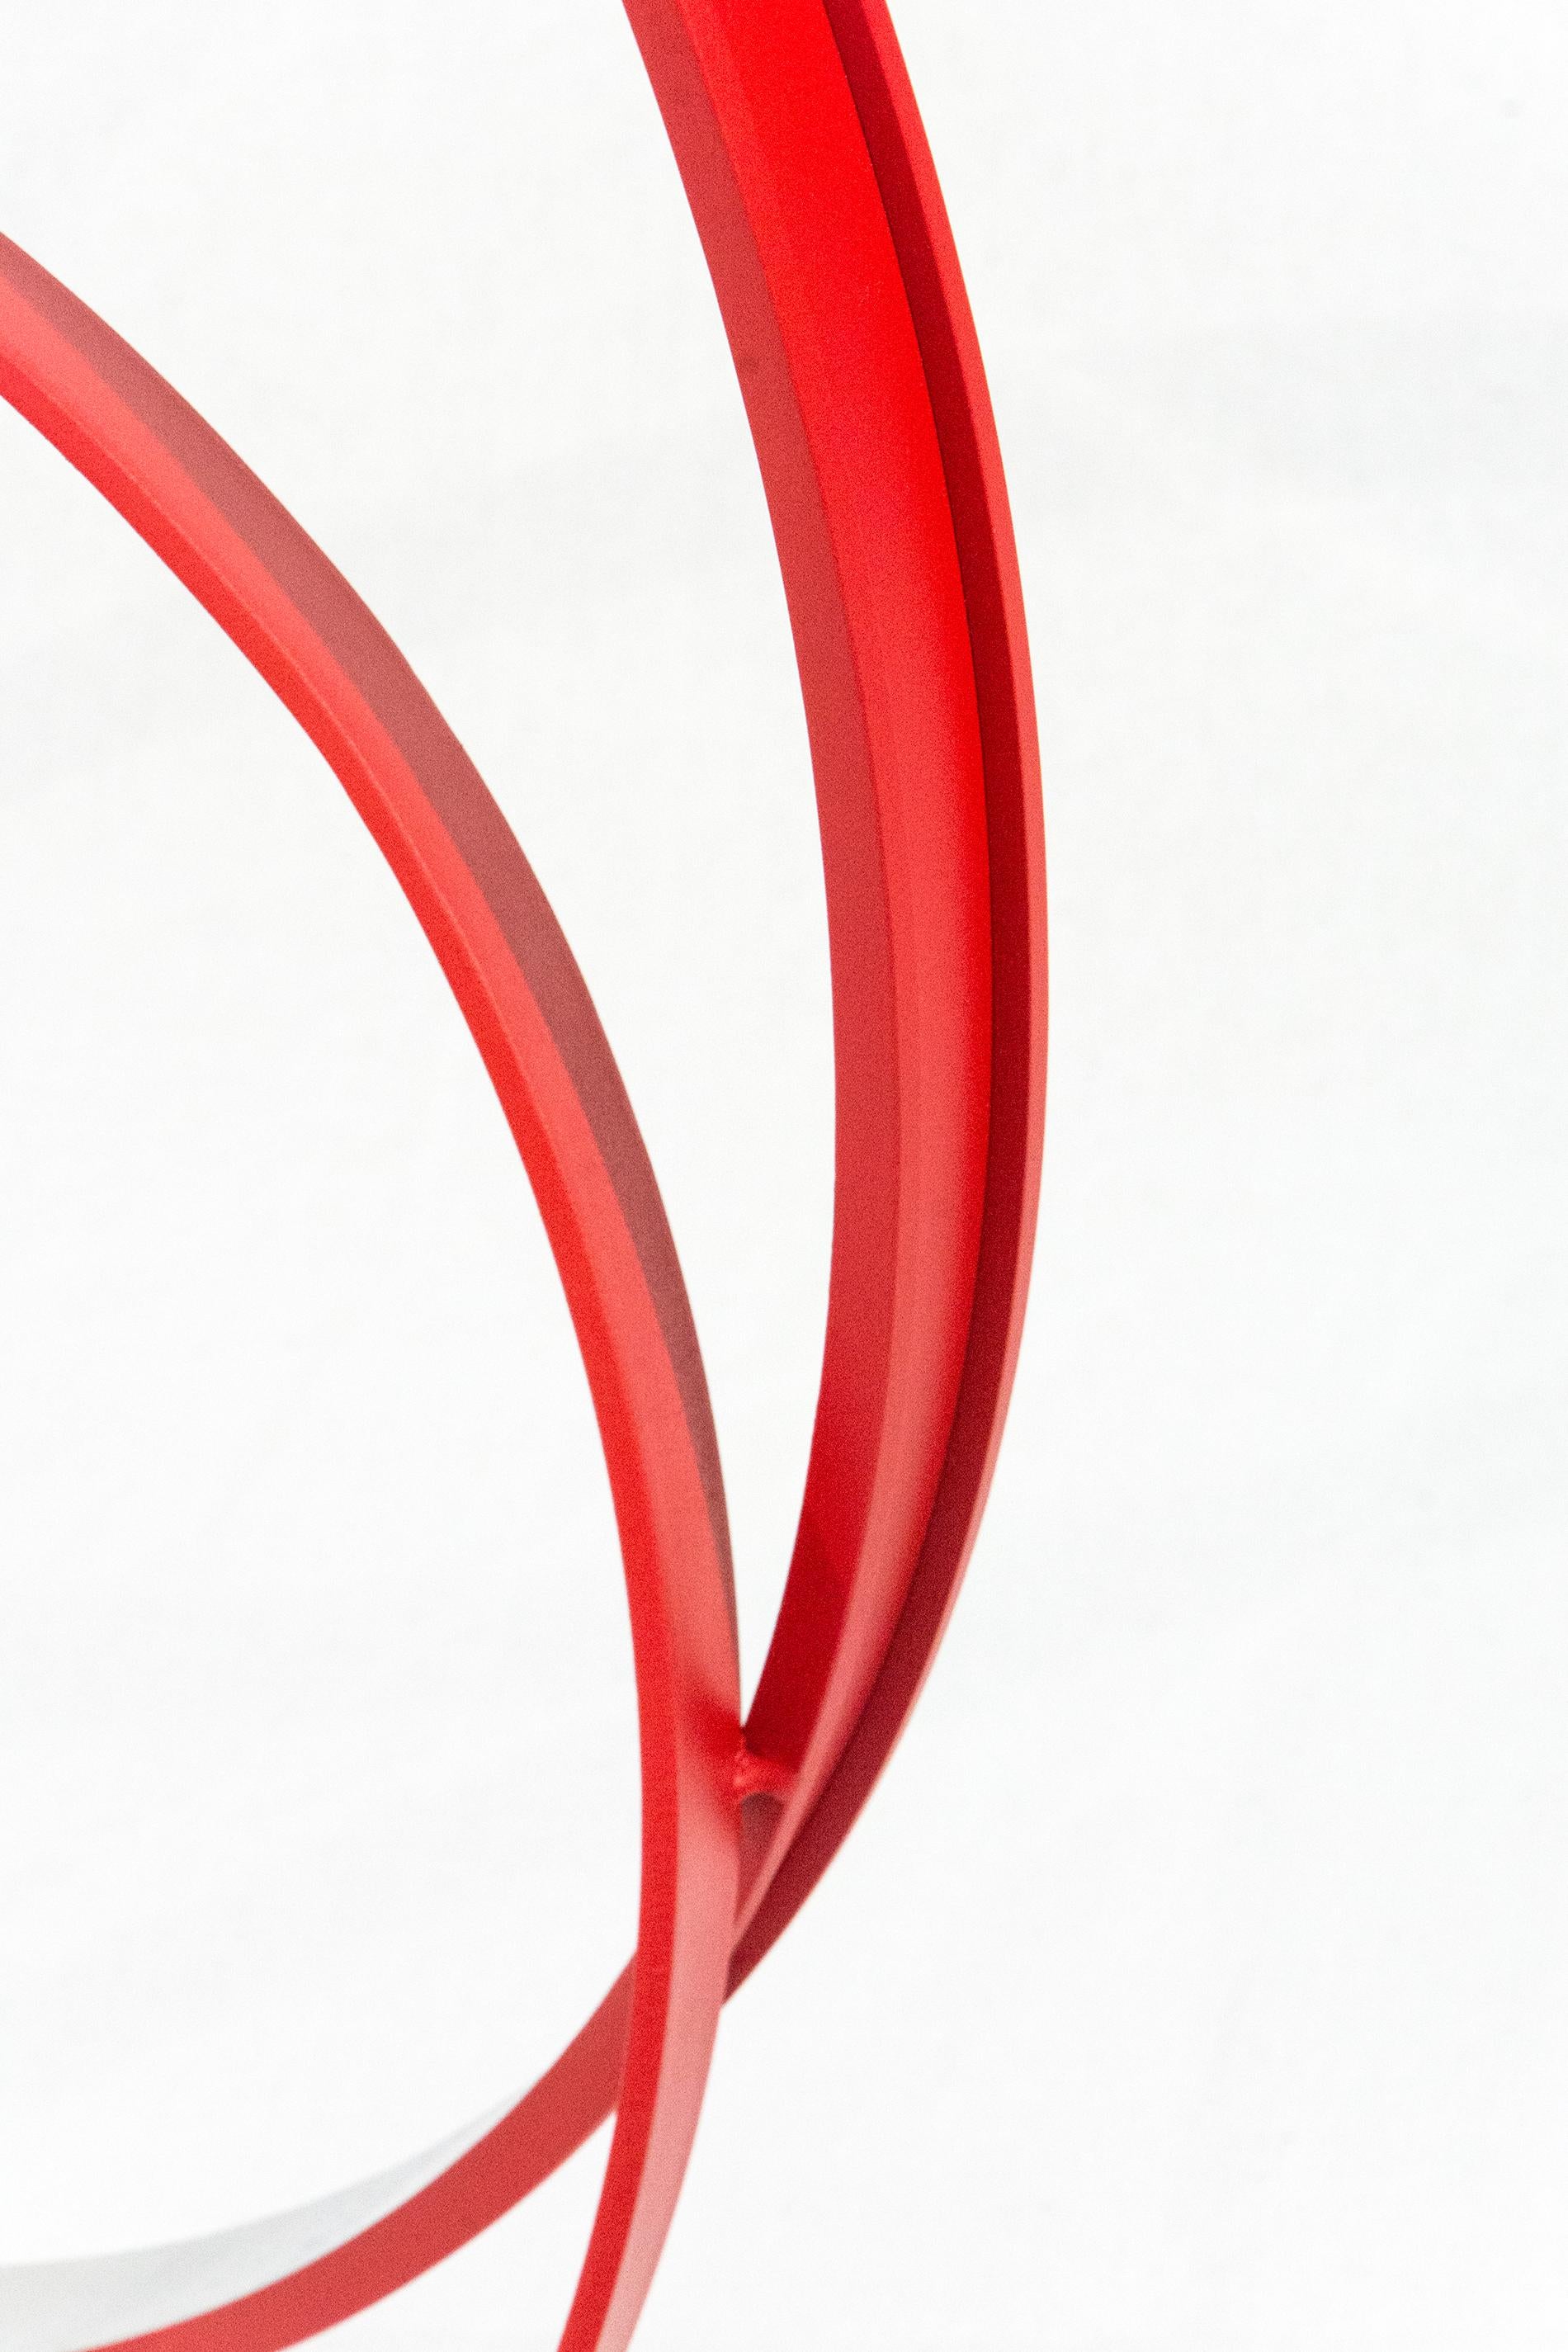 La forme élégante et minimale de cette sculpture est accentuée par son extérieur rouge coquelicot vif. Voici Philippe Pallafray. Forgés à la main en aluminium, les quatre anneaux de différentes tailles sont placés à l'intérieur et à l'opposé d'un